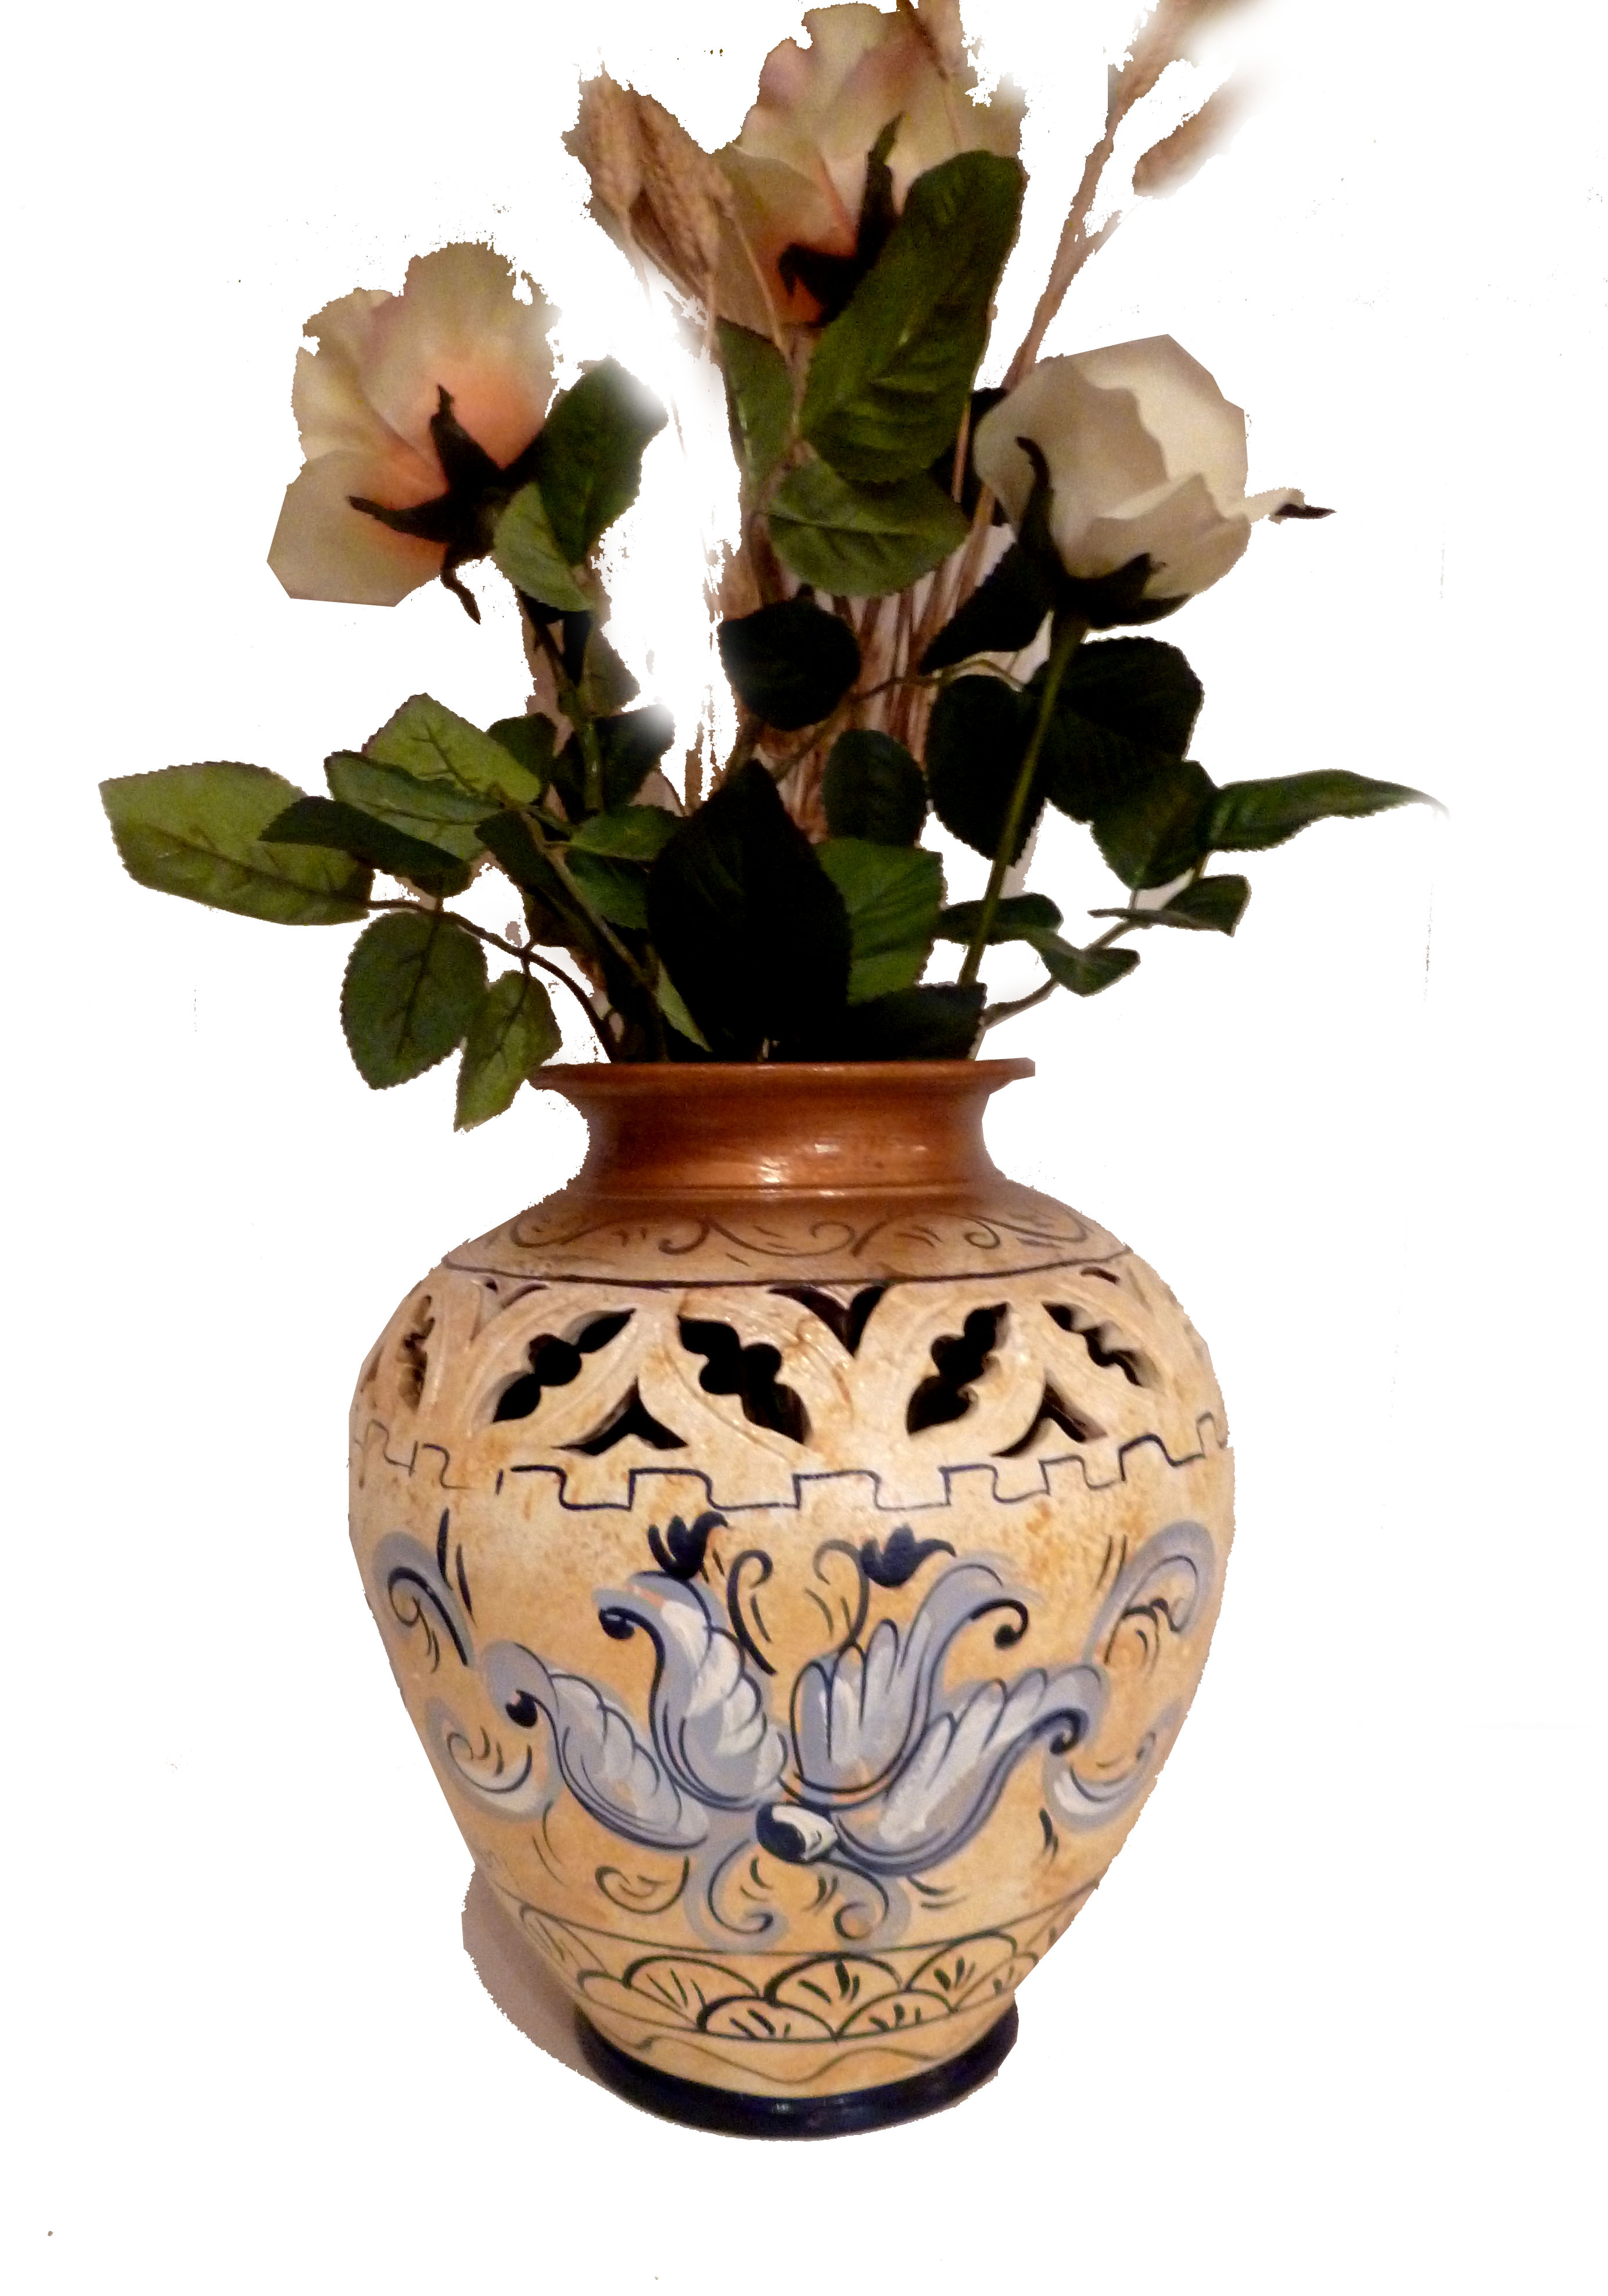 Vaso bombato, stile fiocco azzurro, altezza 30 cm